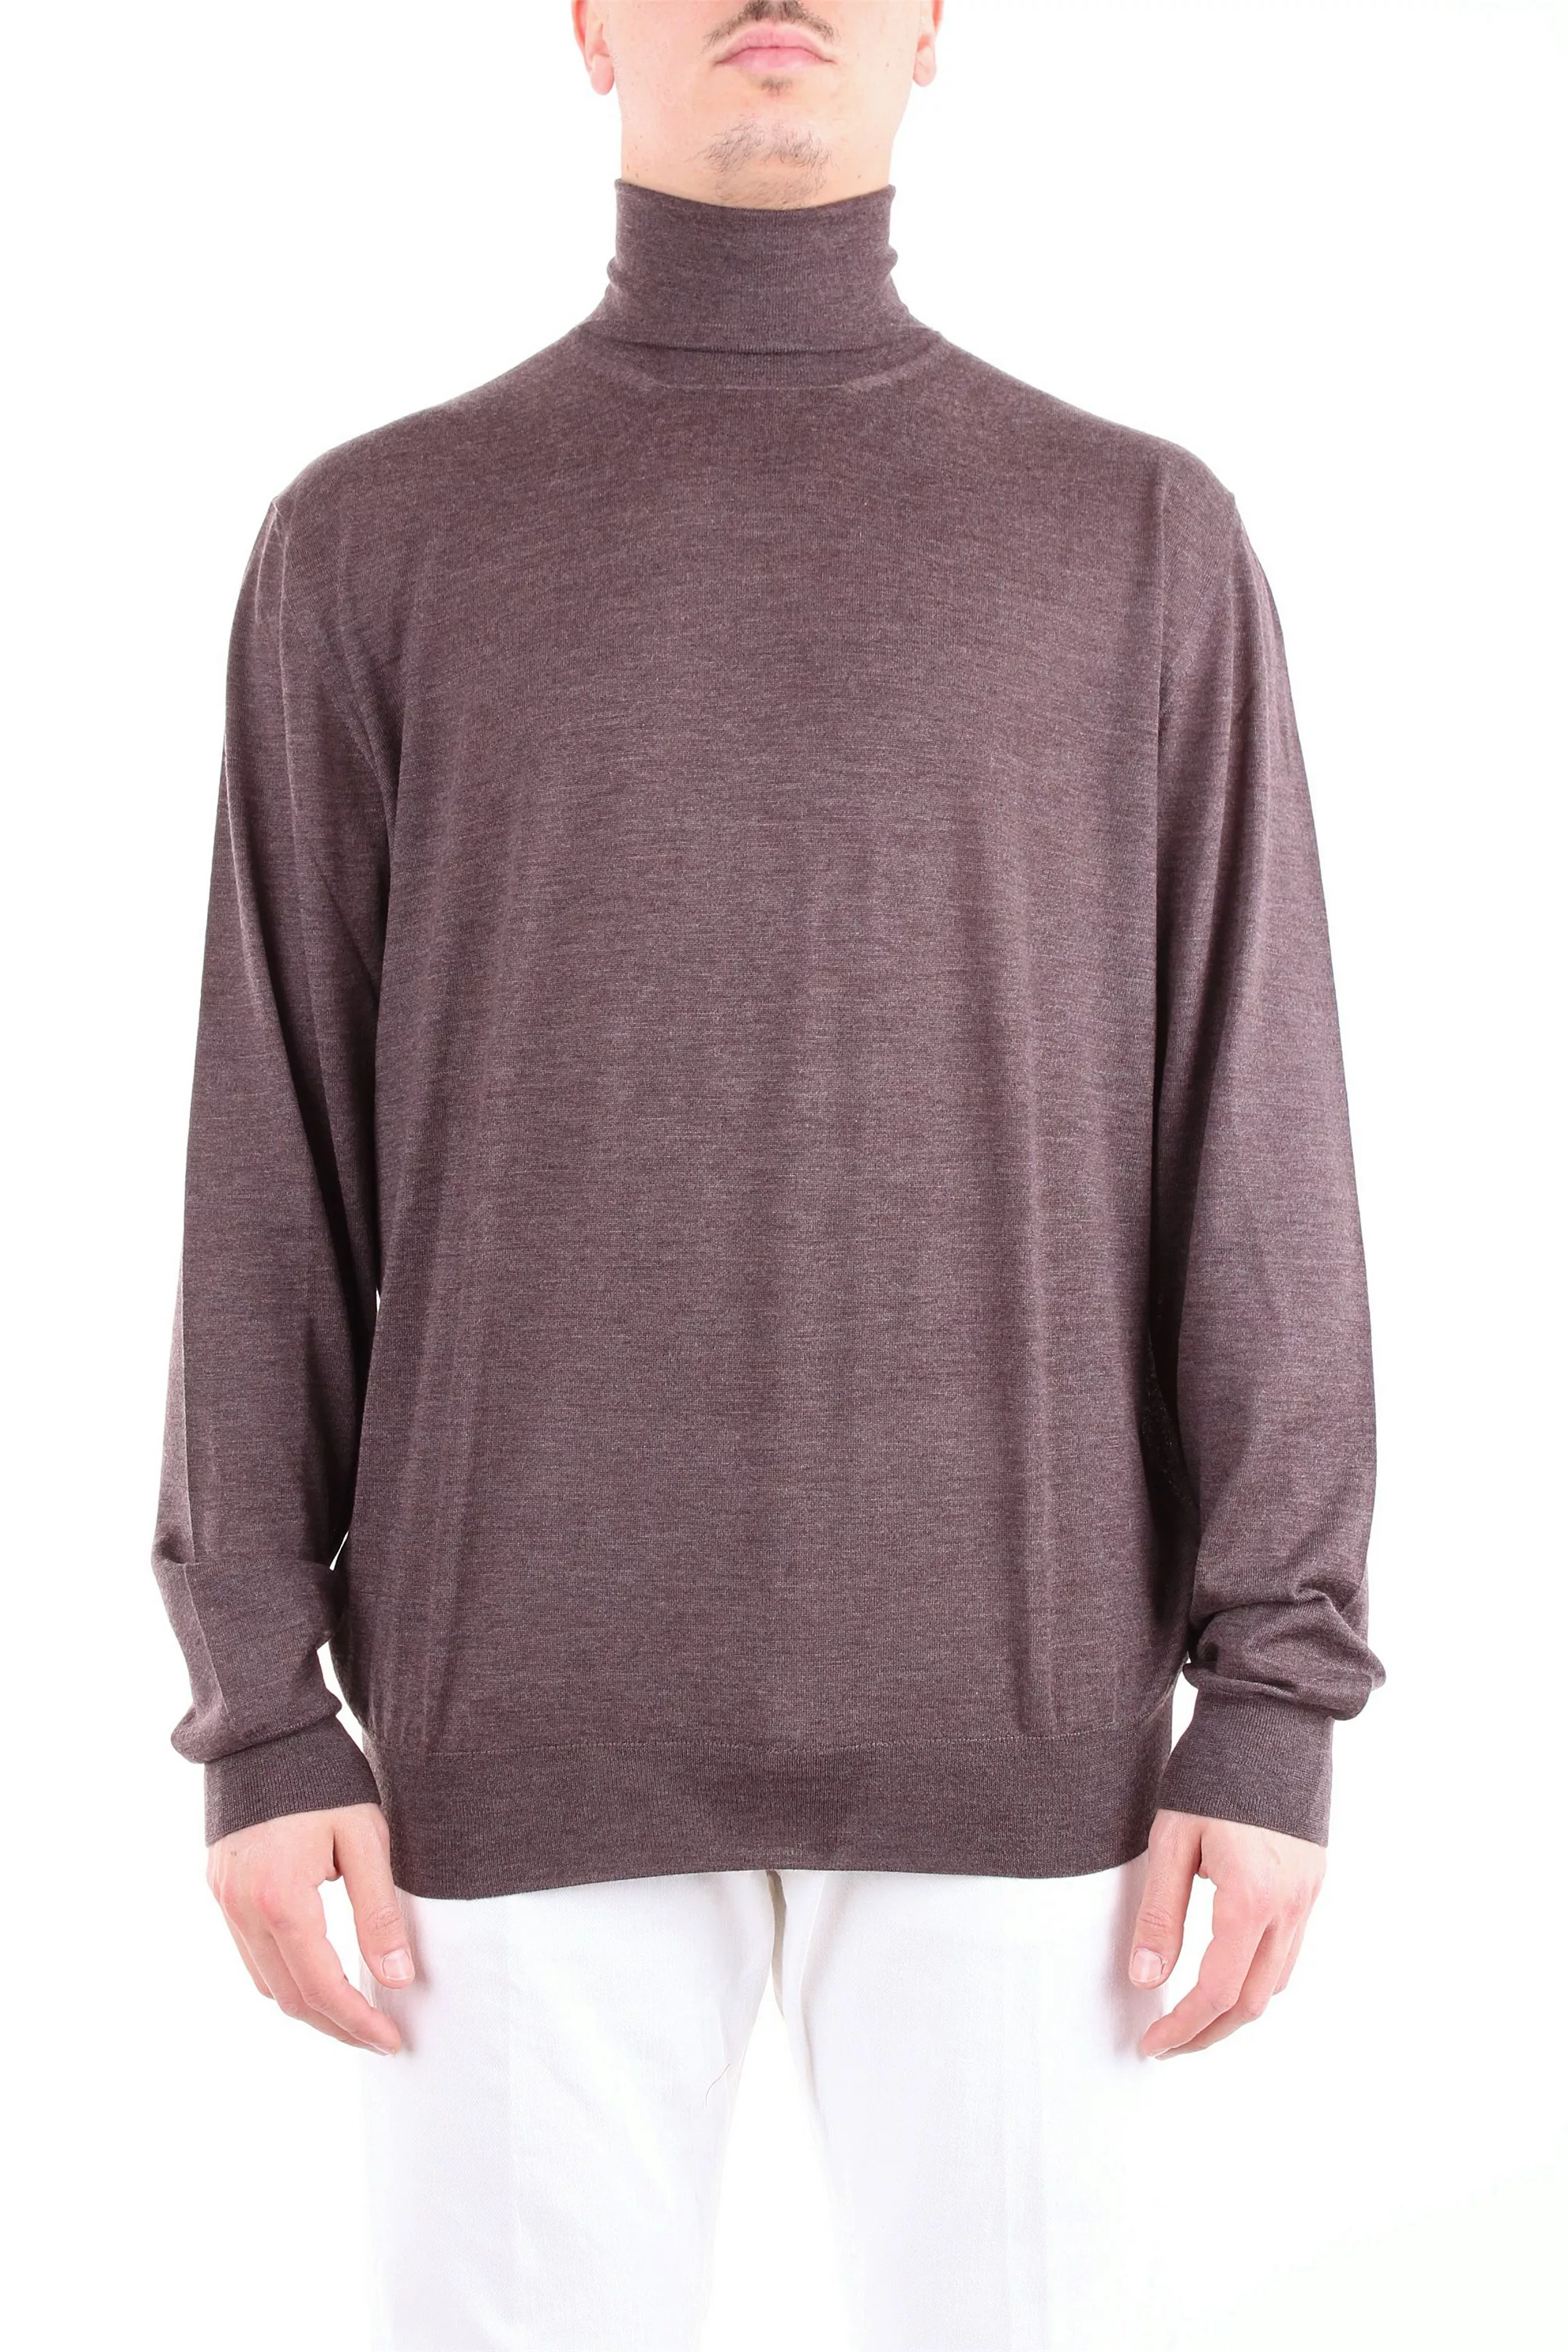 FEDELI Sweatshirt Herren braun 100% Wolle günstig online kaufen